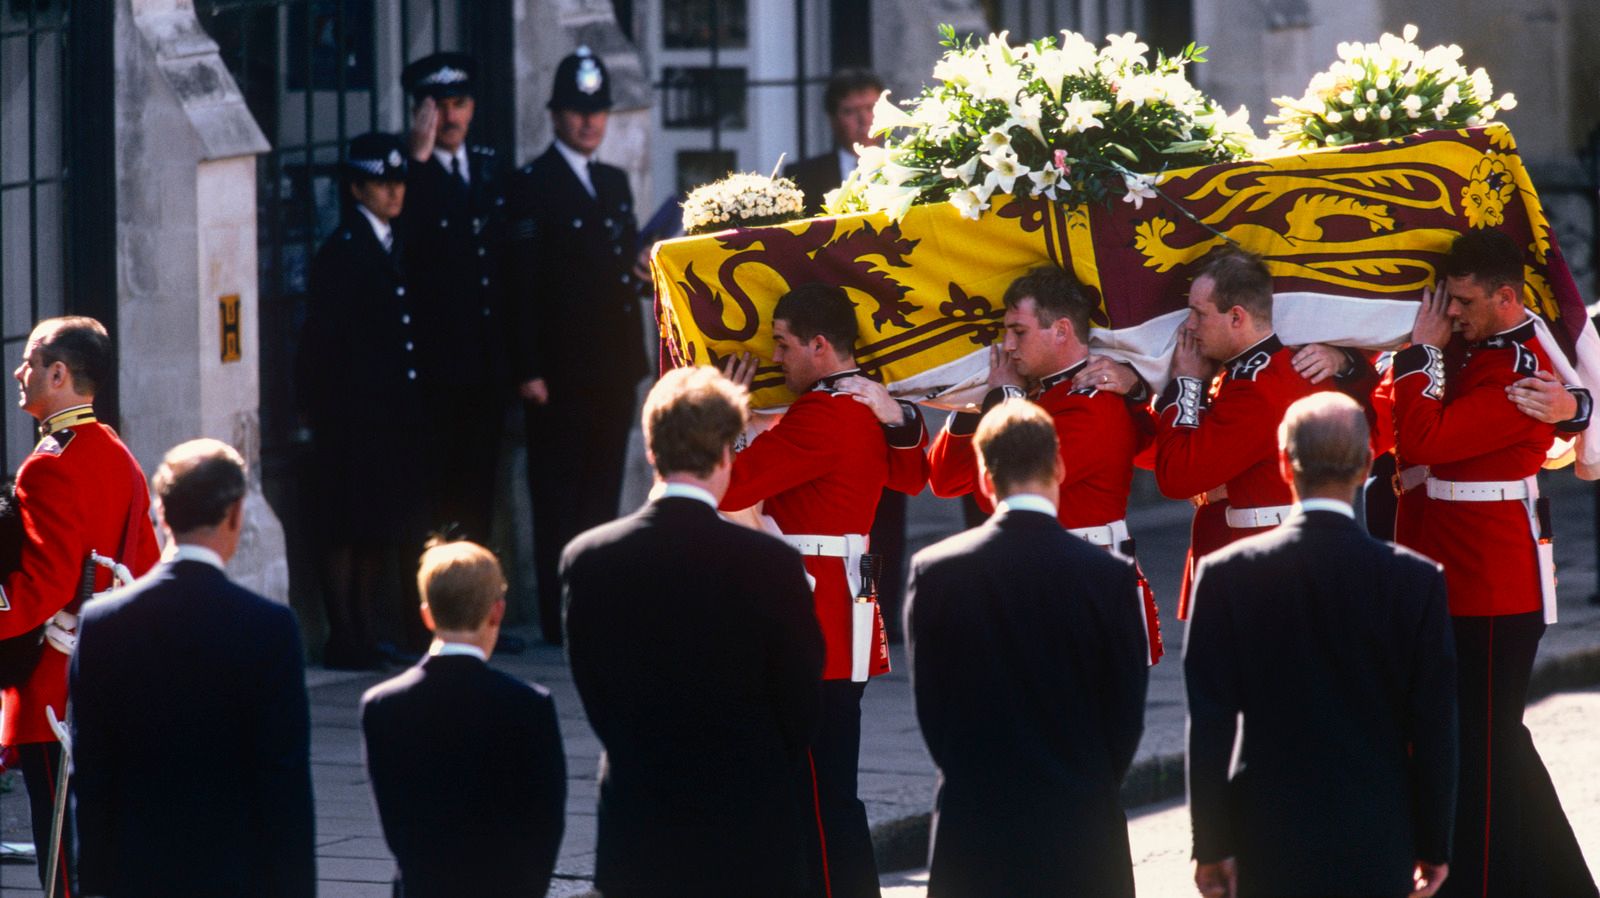 Похороны принцессы. Похороны принцессы Дианы. Похороны принцессы Дианы 1997 трансляция. Funeral of Princess Diana (1997).